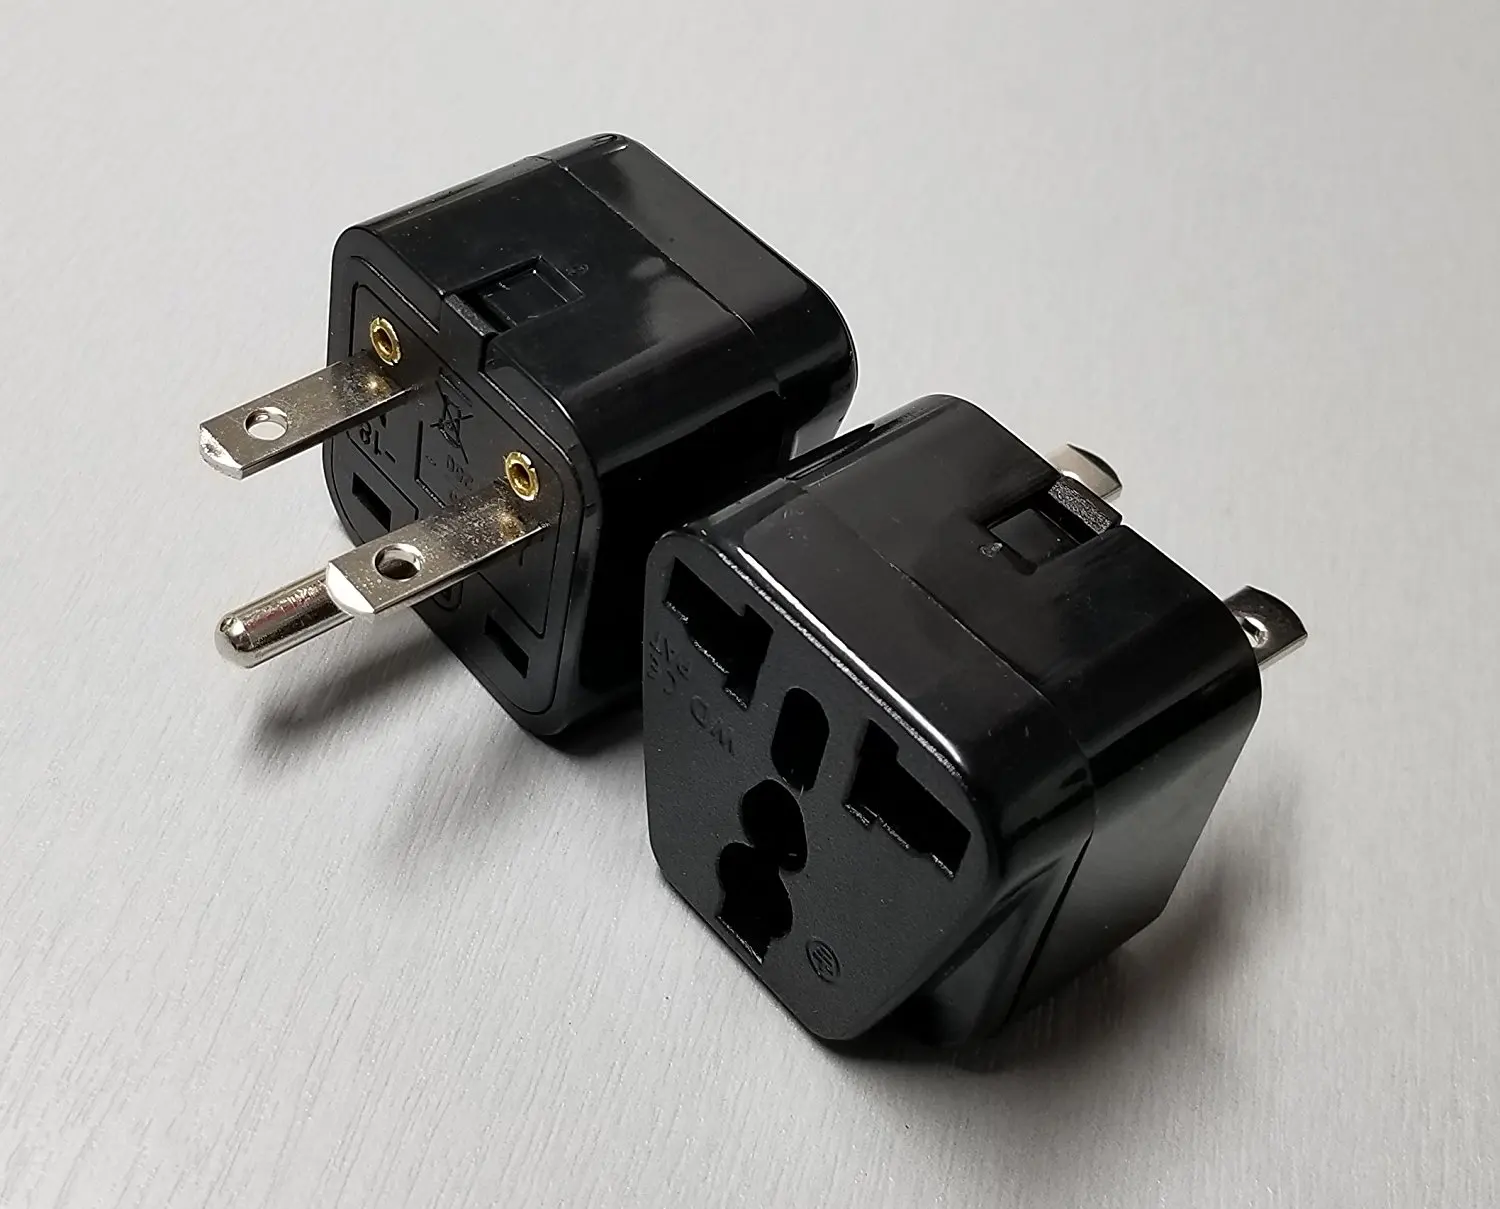 240 volt plug adapters